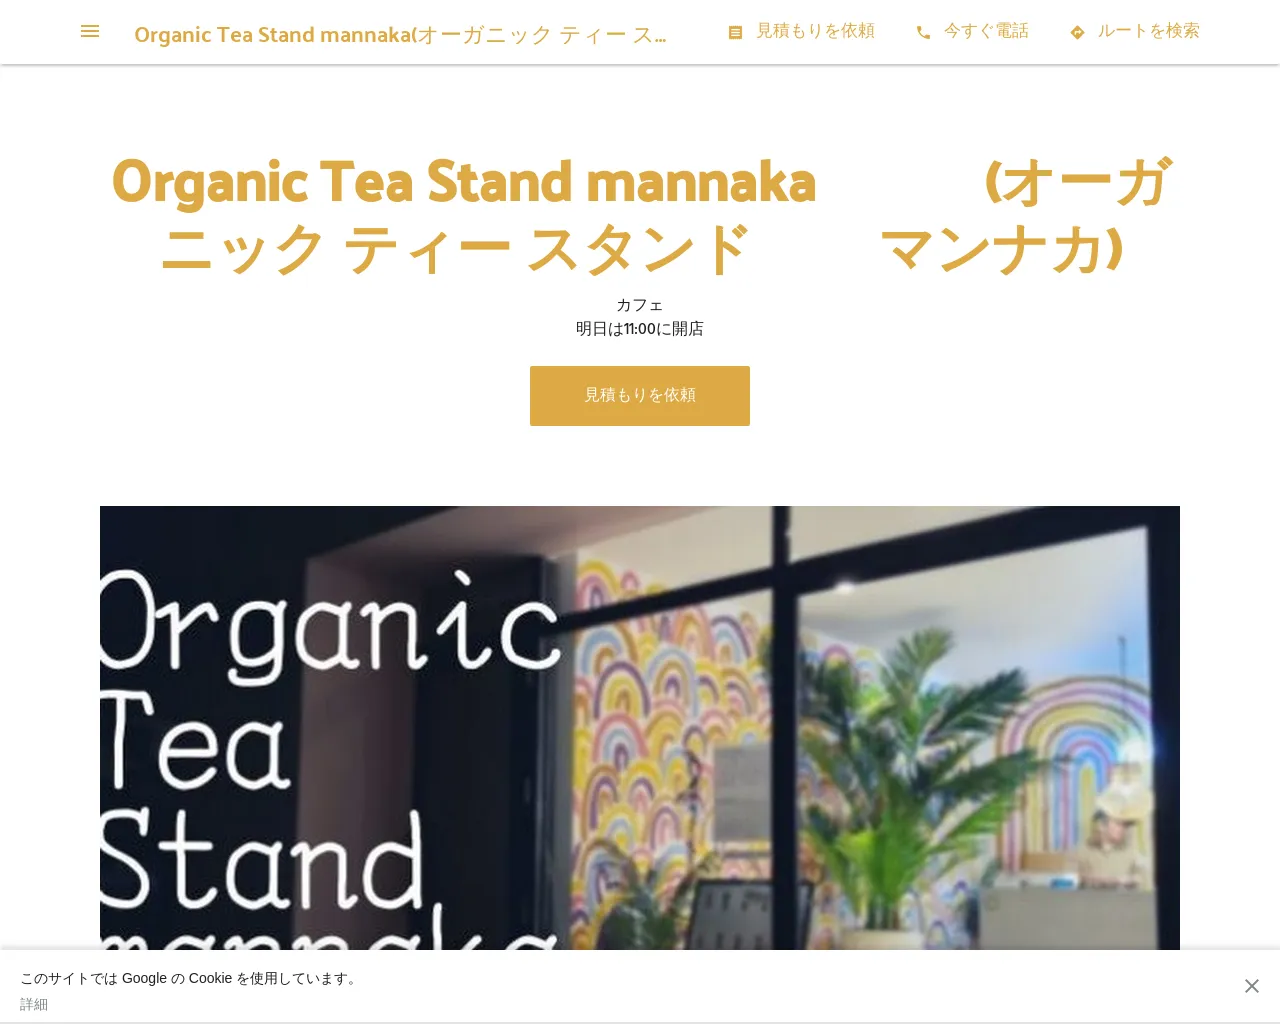 Organic Tea Stand mannaka(オーガニック ティー スタンド マンナカ) site